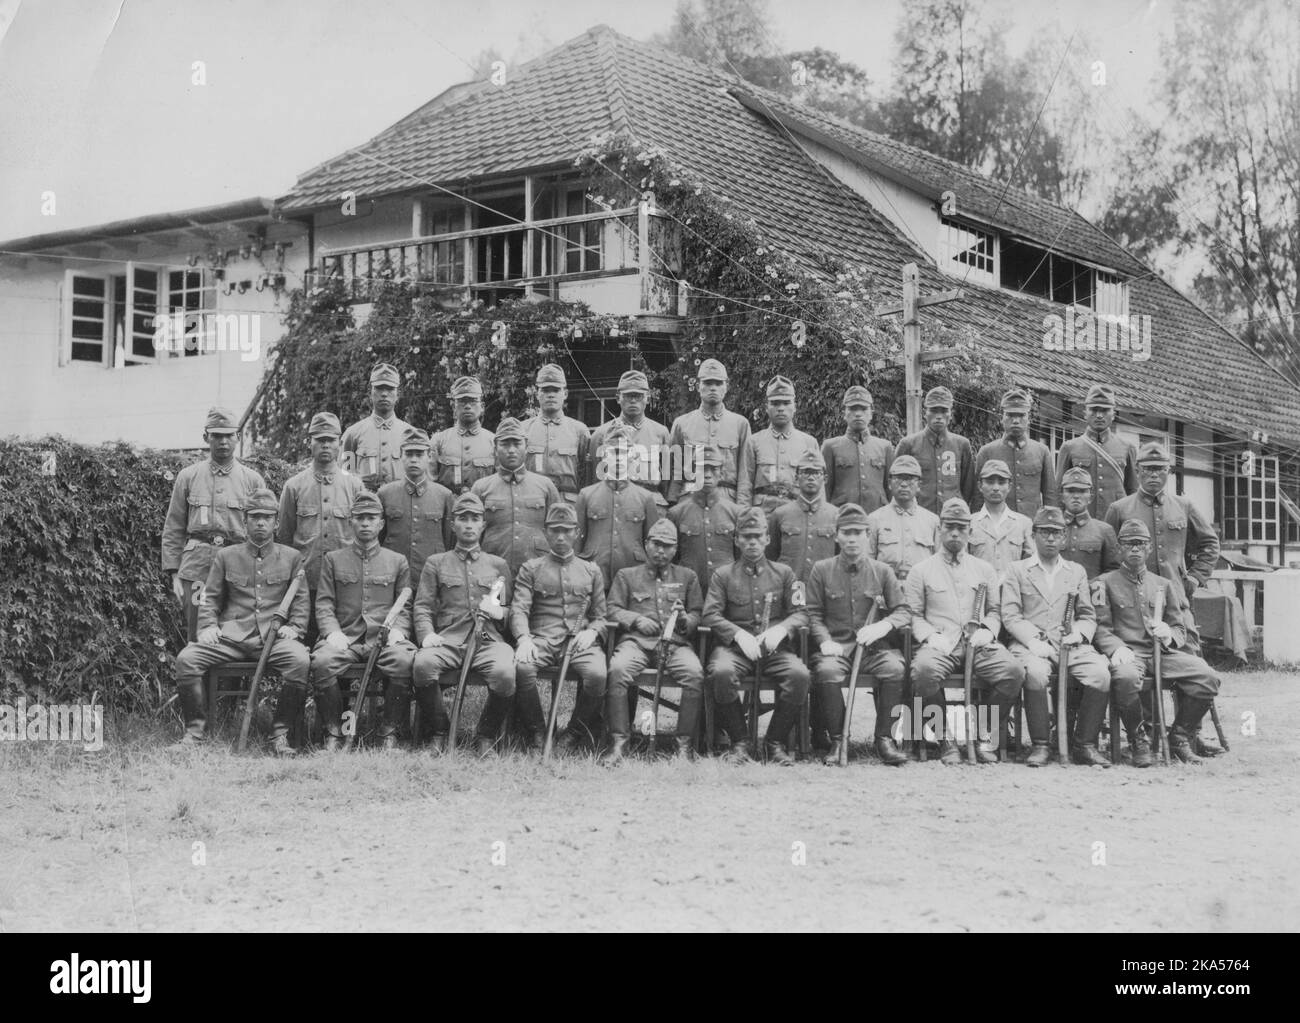 Guerre du Pacifique, 1941-1945. Le cadre du régiment d'infanterie de l'Armée impériale japonaise 230th photographié à Sumatra, Indes néerlandaises, 1942. Le commandant du régiment, le colonel Shoji, est assis au centre de la première rangée. Élevé à Shizuoka à la fin des années 1930, le 230th Infantry Regiment a vu sa première action en Chine. Avec le déclenchement de la guerre du Pacifique en décembre 1941, le régiment a participé à la bataille de Hong Kong, suivie de l'invasion des Indes néerlandaises de l'est, et plus tard de la campagne Guadalcanal où ils allaient subir de lourdes pertes avant de se retirer de l'île. Banque D'Images